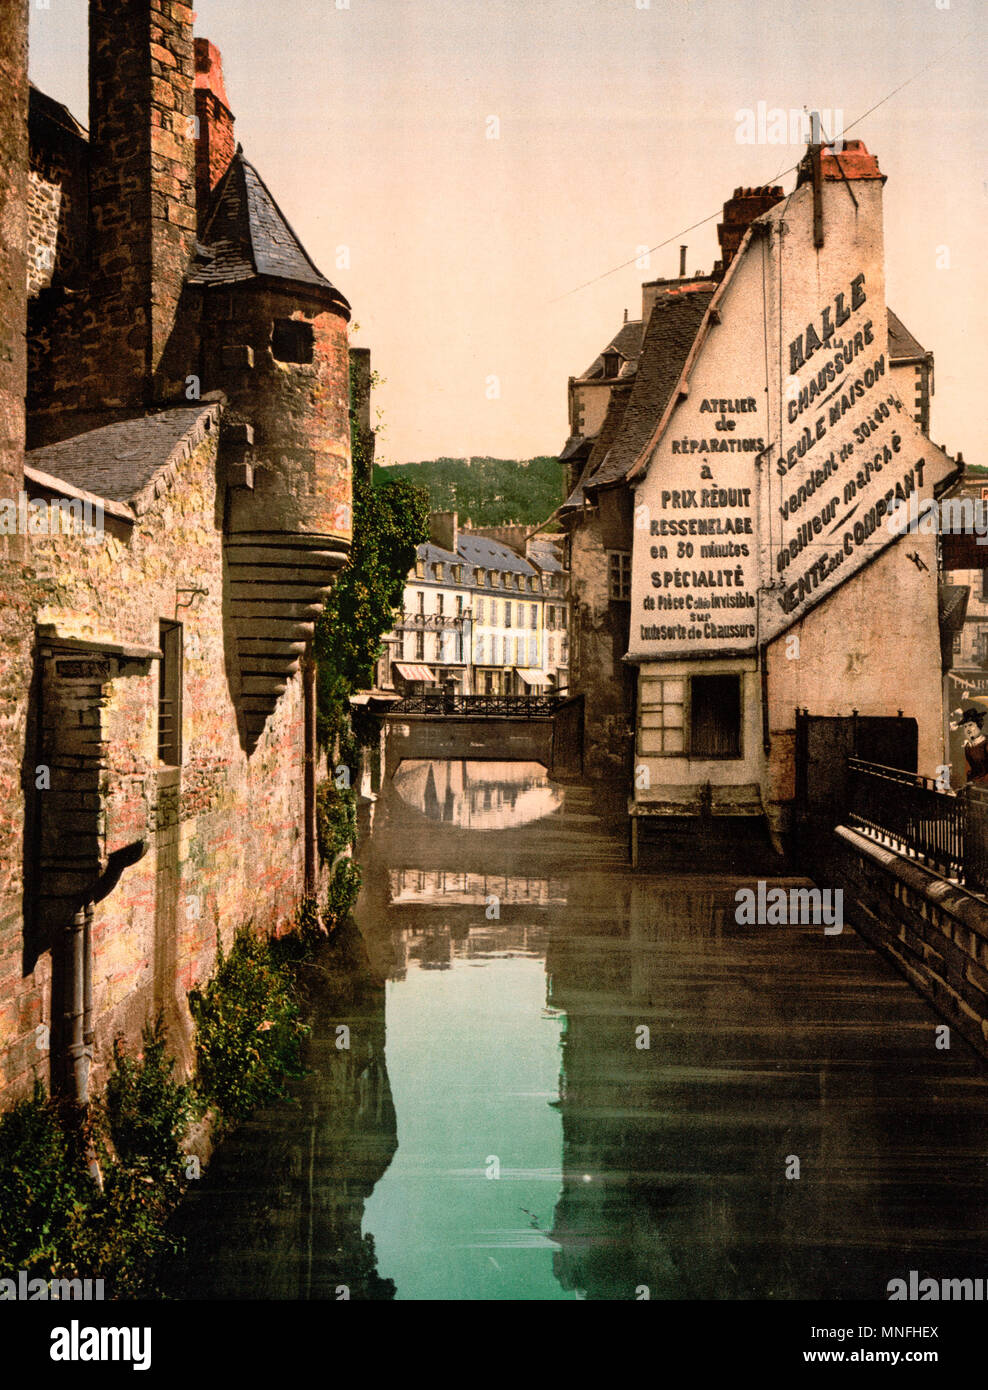 Die fußgängerbrücke von Steir, Quimper, Frankreich, um 1900 Stockfoto